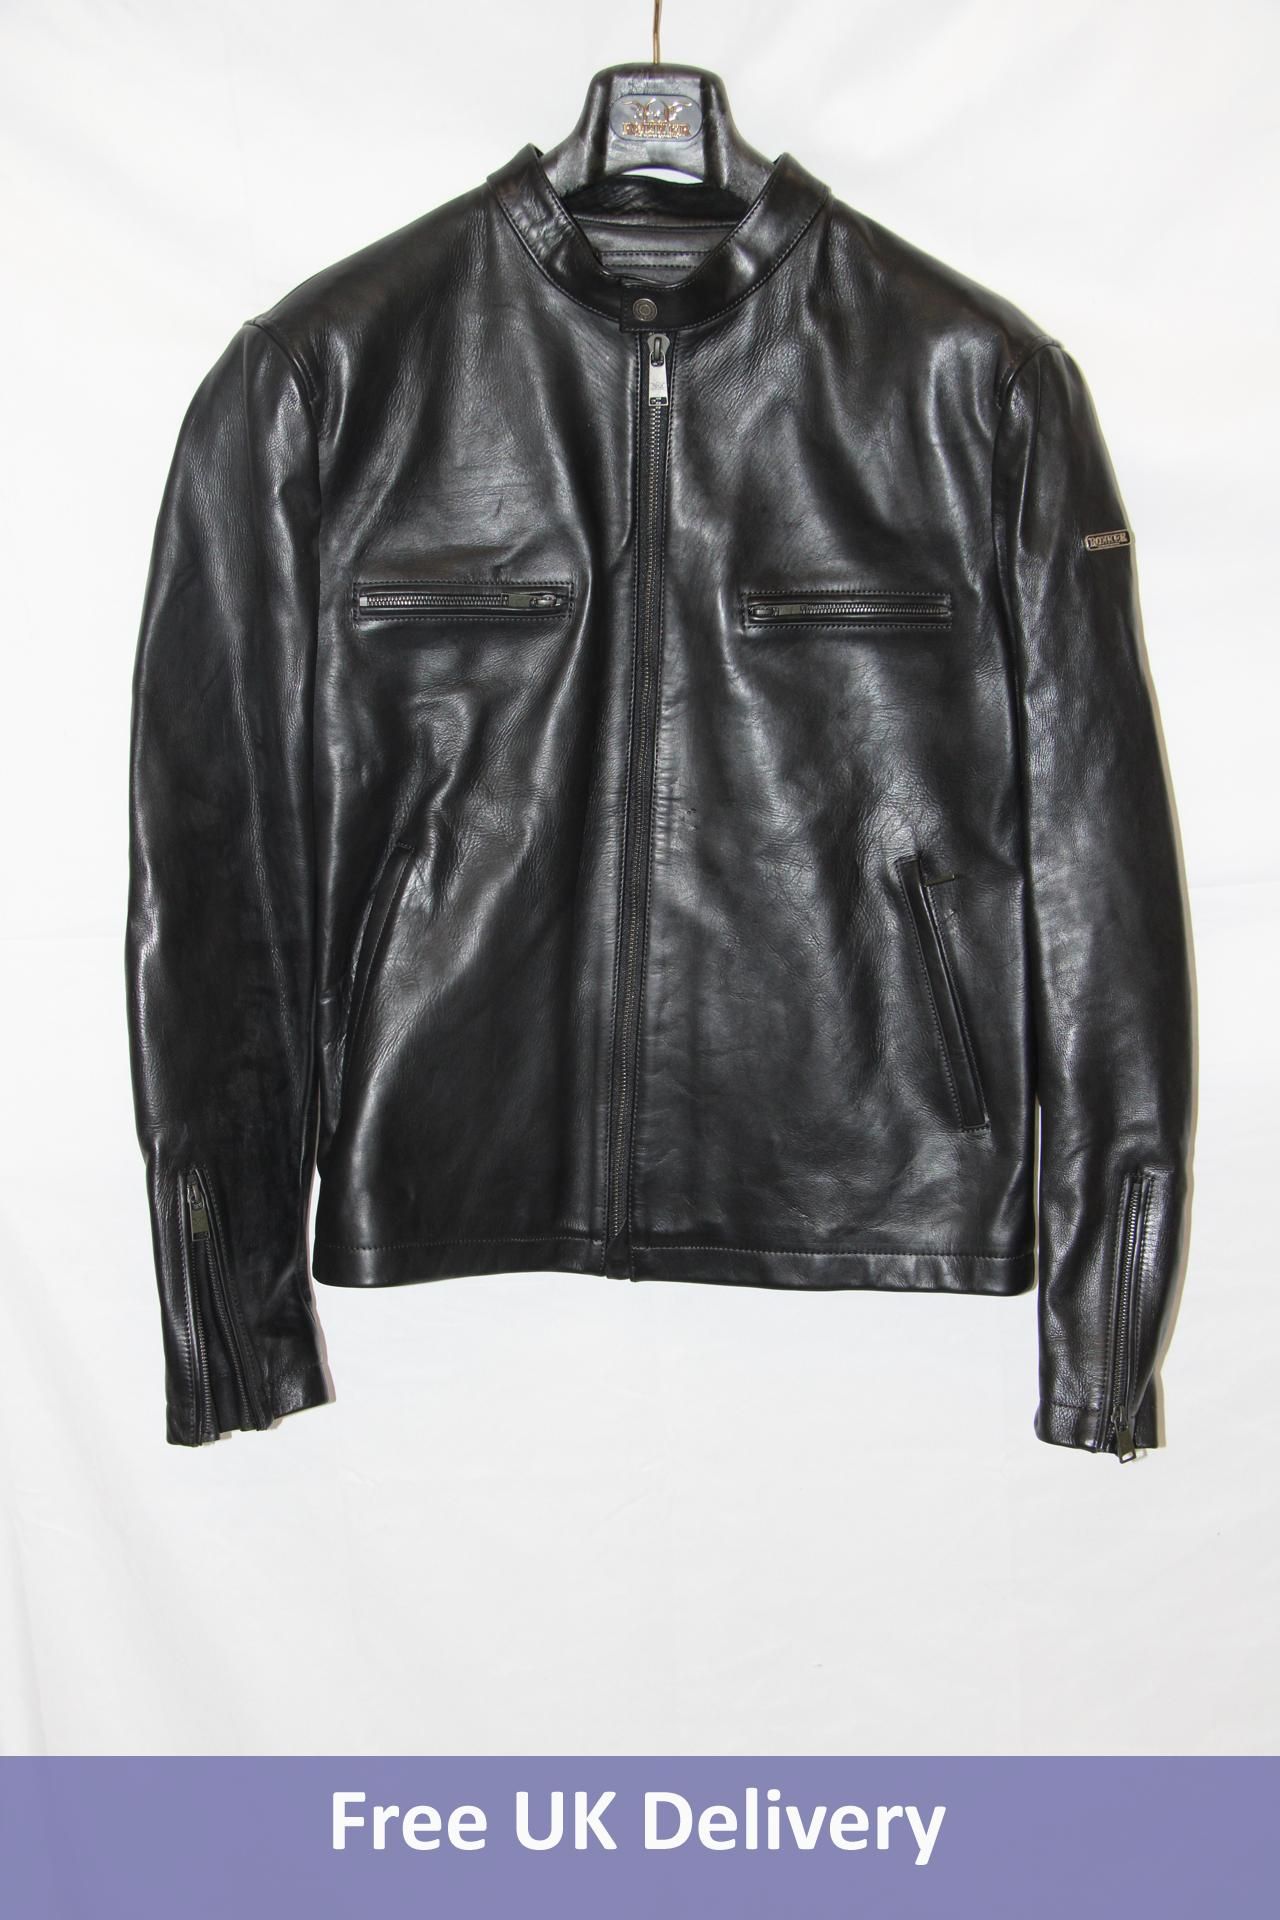 Rokker Commander Leather Jacket, Black, Size XL